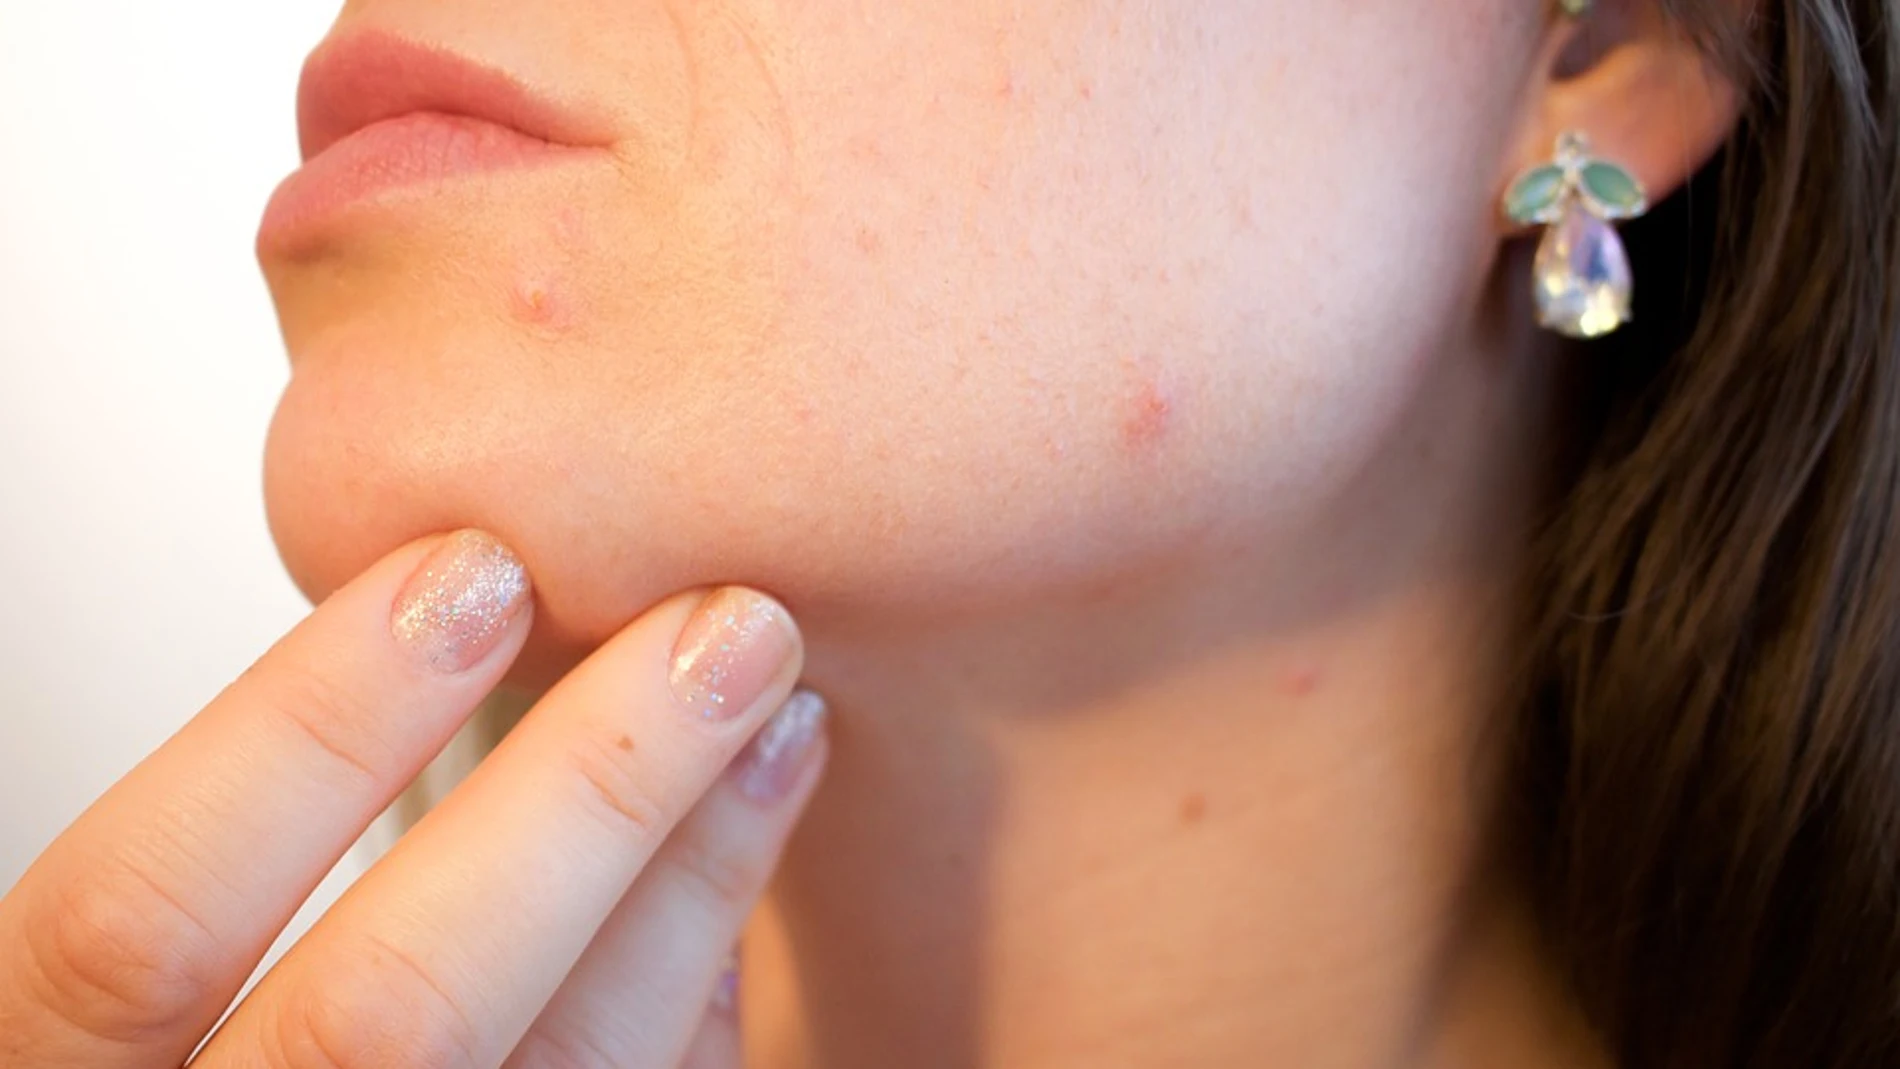 El acné es un problema muy frecuente de la piel que aparece cuando los folículos pilosos debajo de esta se obstruyen